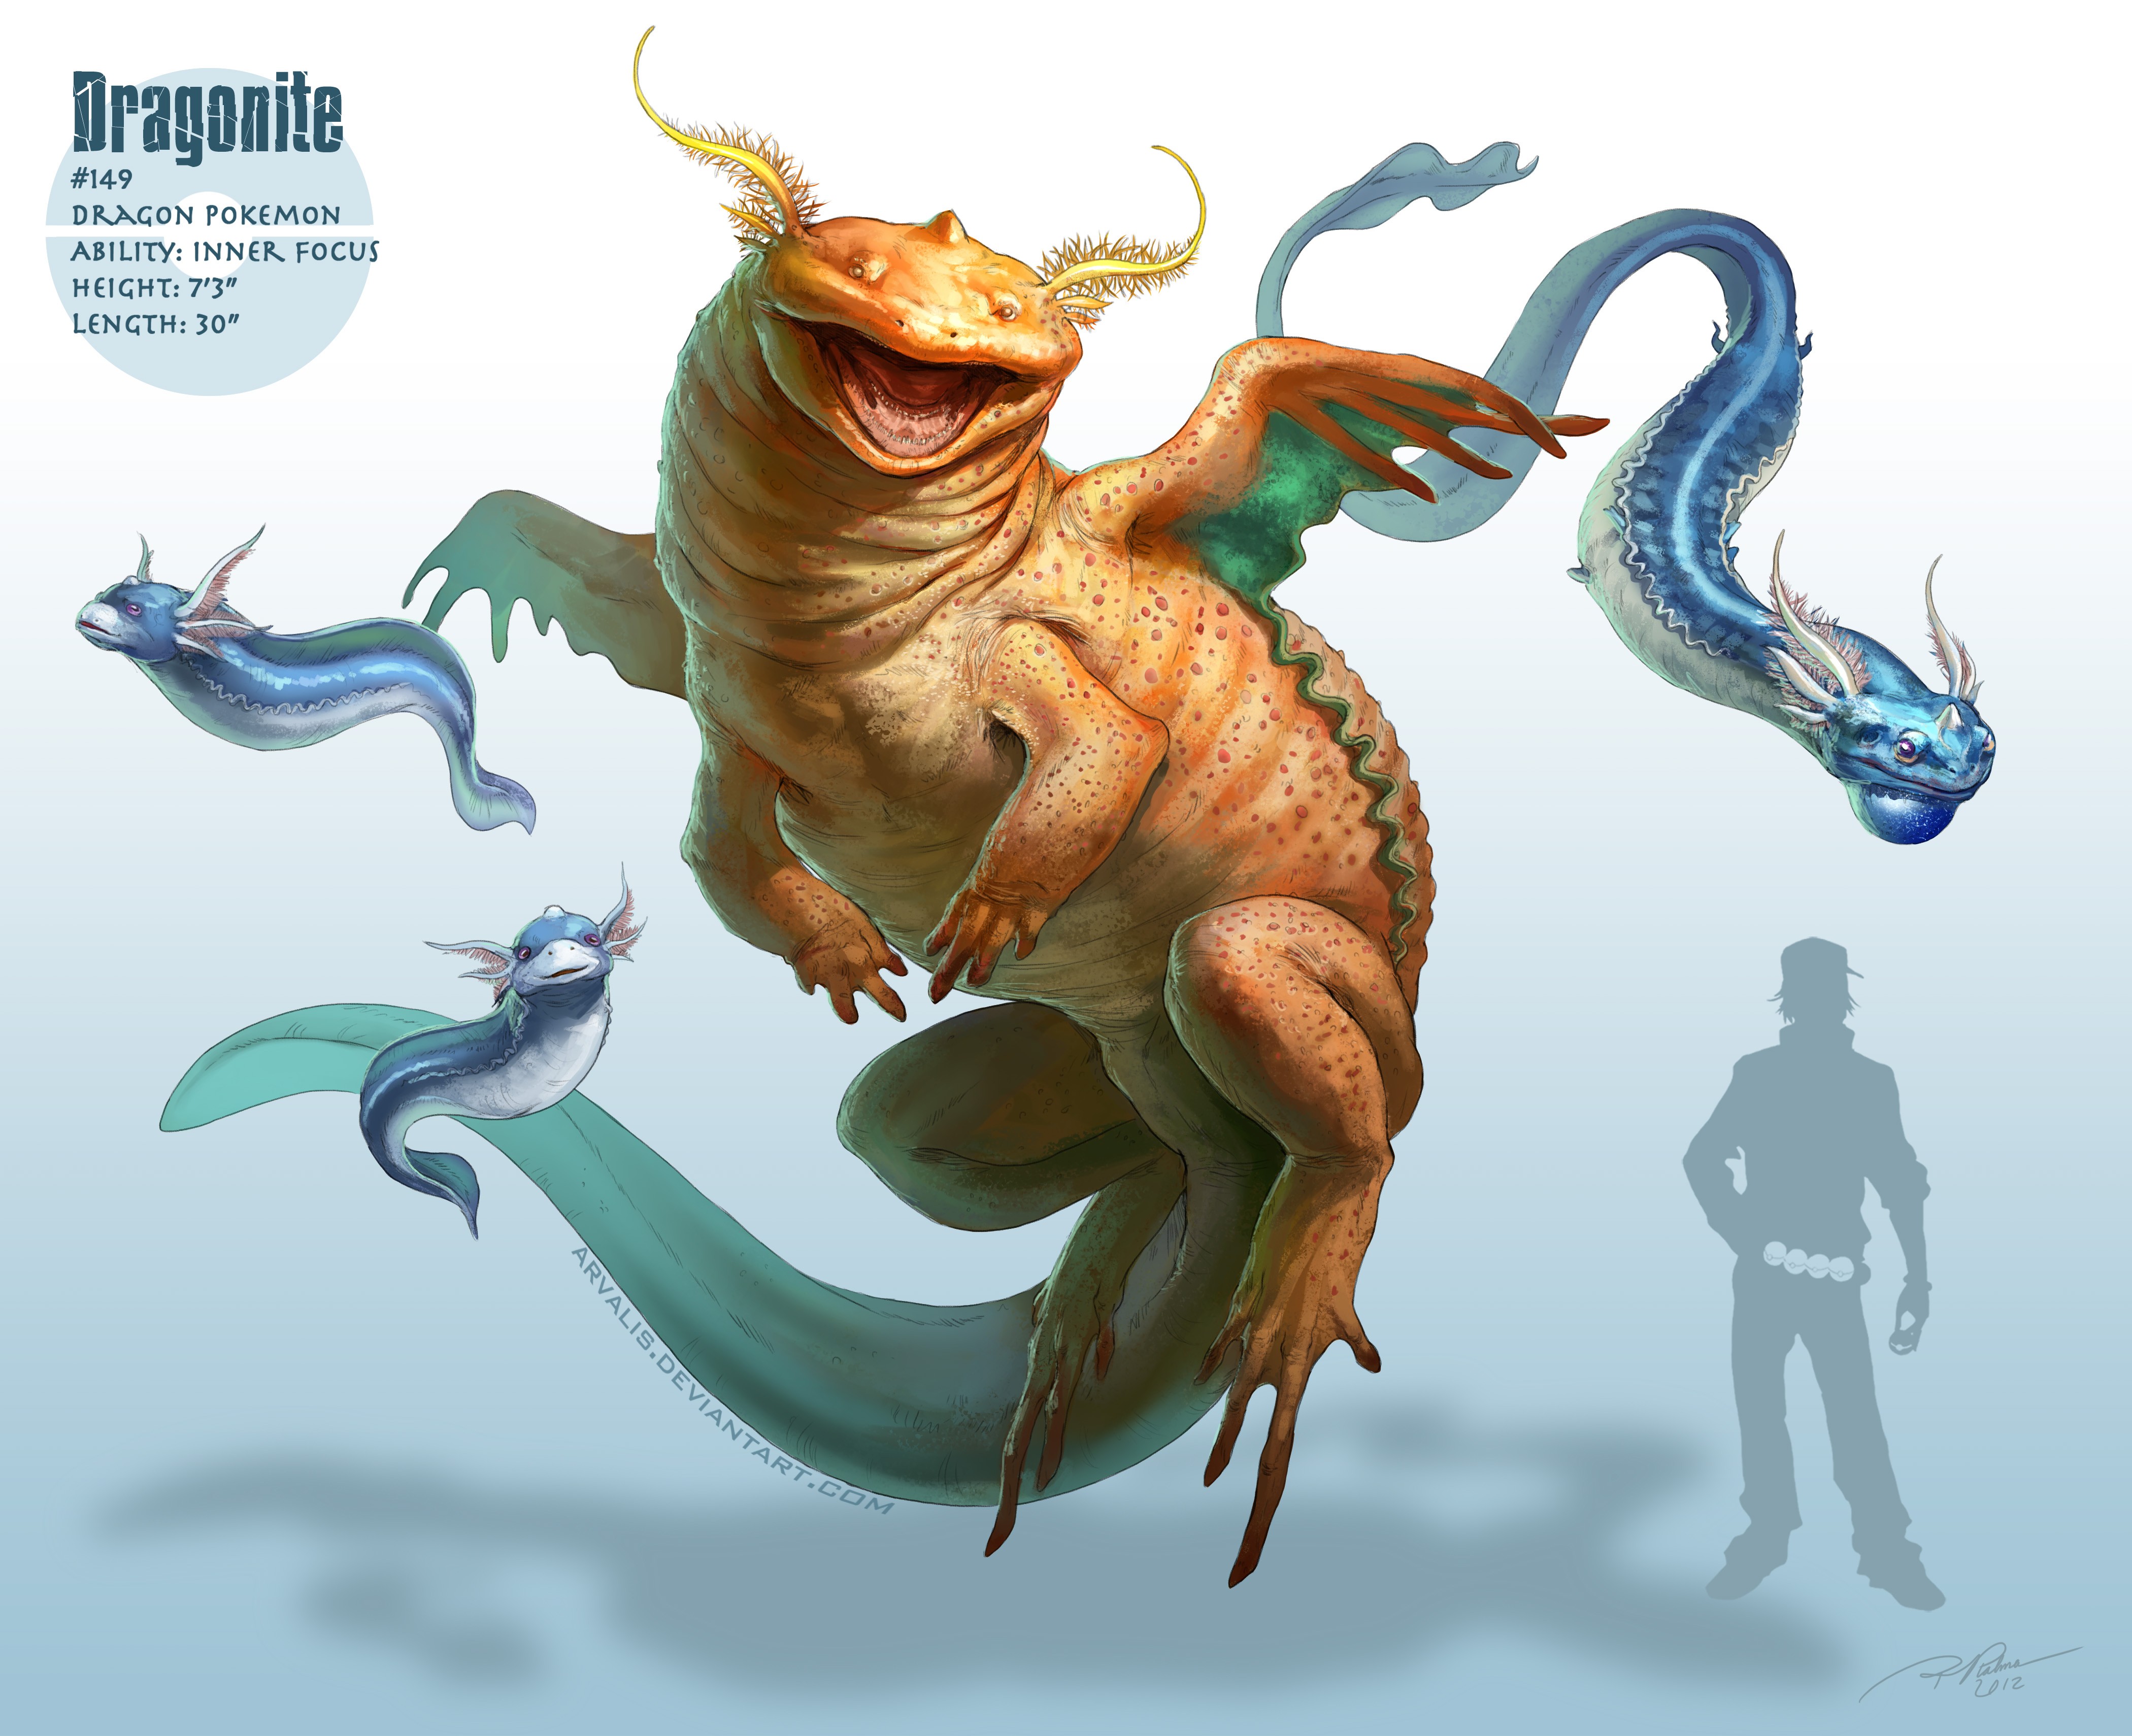 Dragonite - Realistic Pokemon Dragonite , HD Wallpaper & Backgrounds